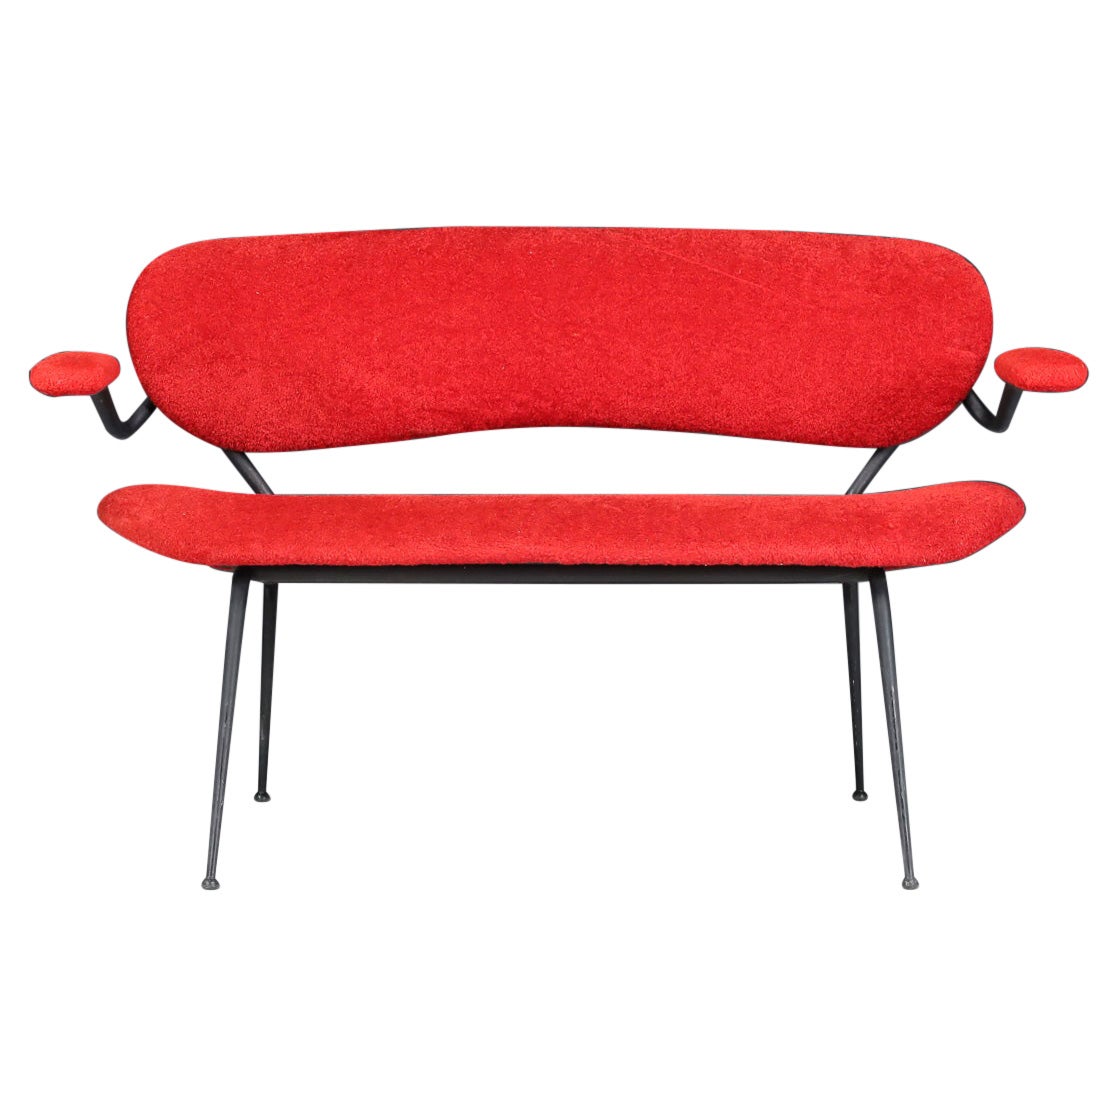 Rotes Mid-Century Modern-Sofa/Bank von Gastone Rinaldi, Italien, 1960er Jahre